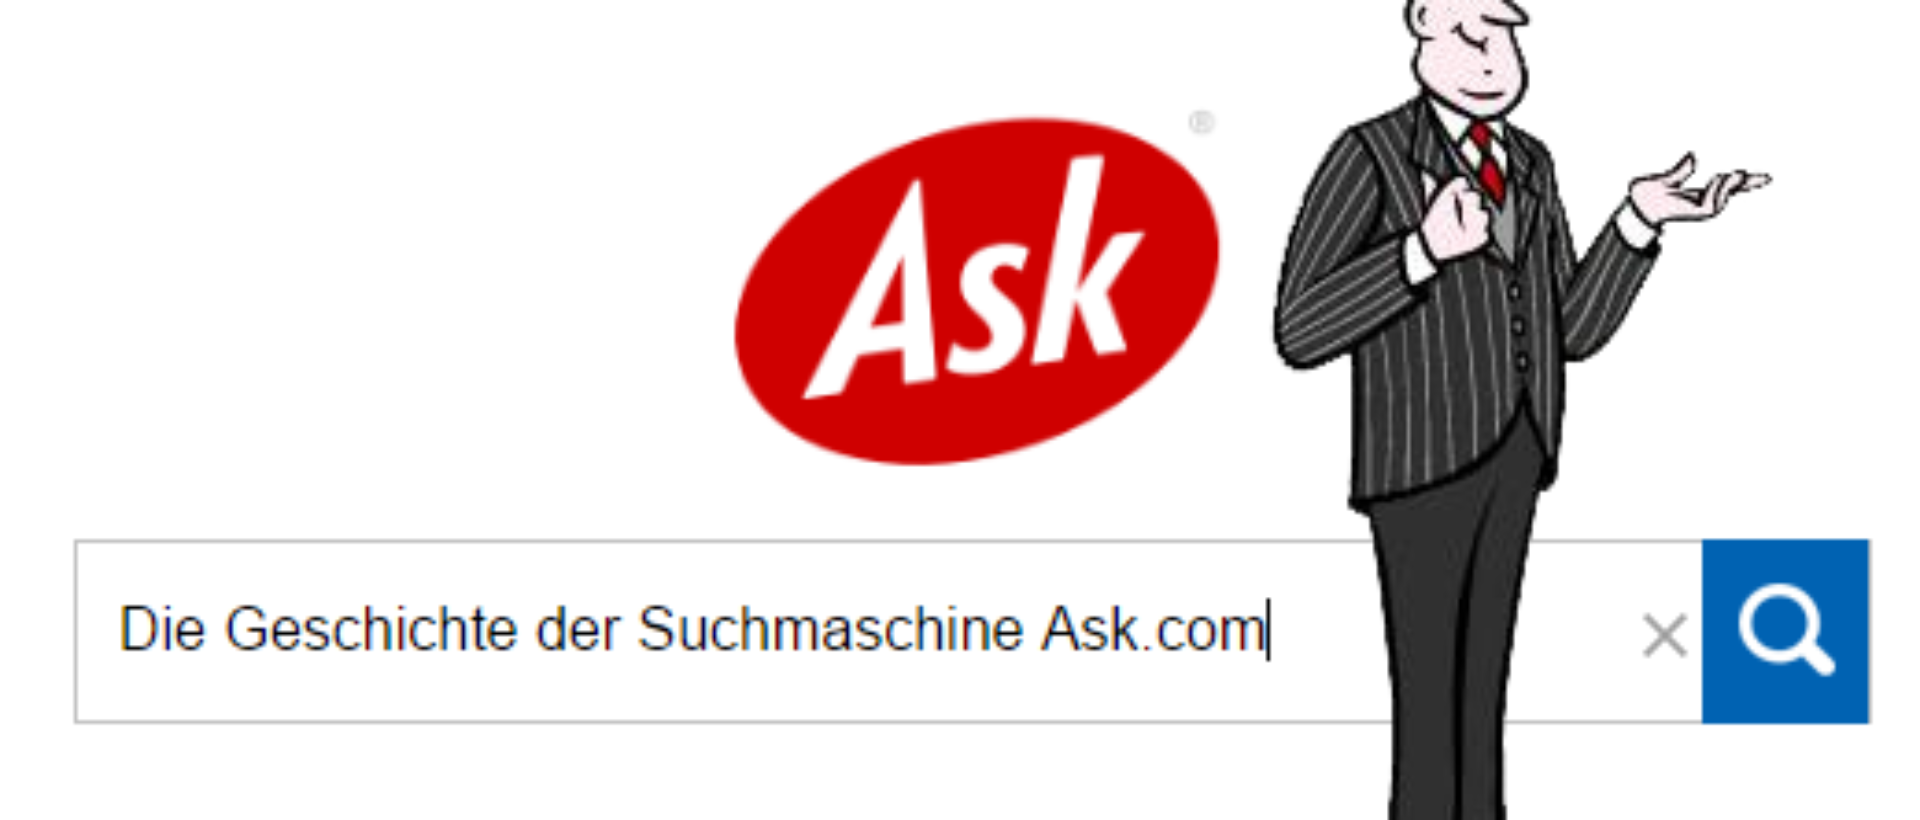 Suchmaschine Ask.com mit kritischer Browser-Toolbar